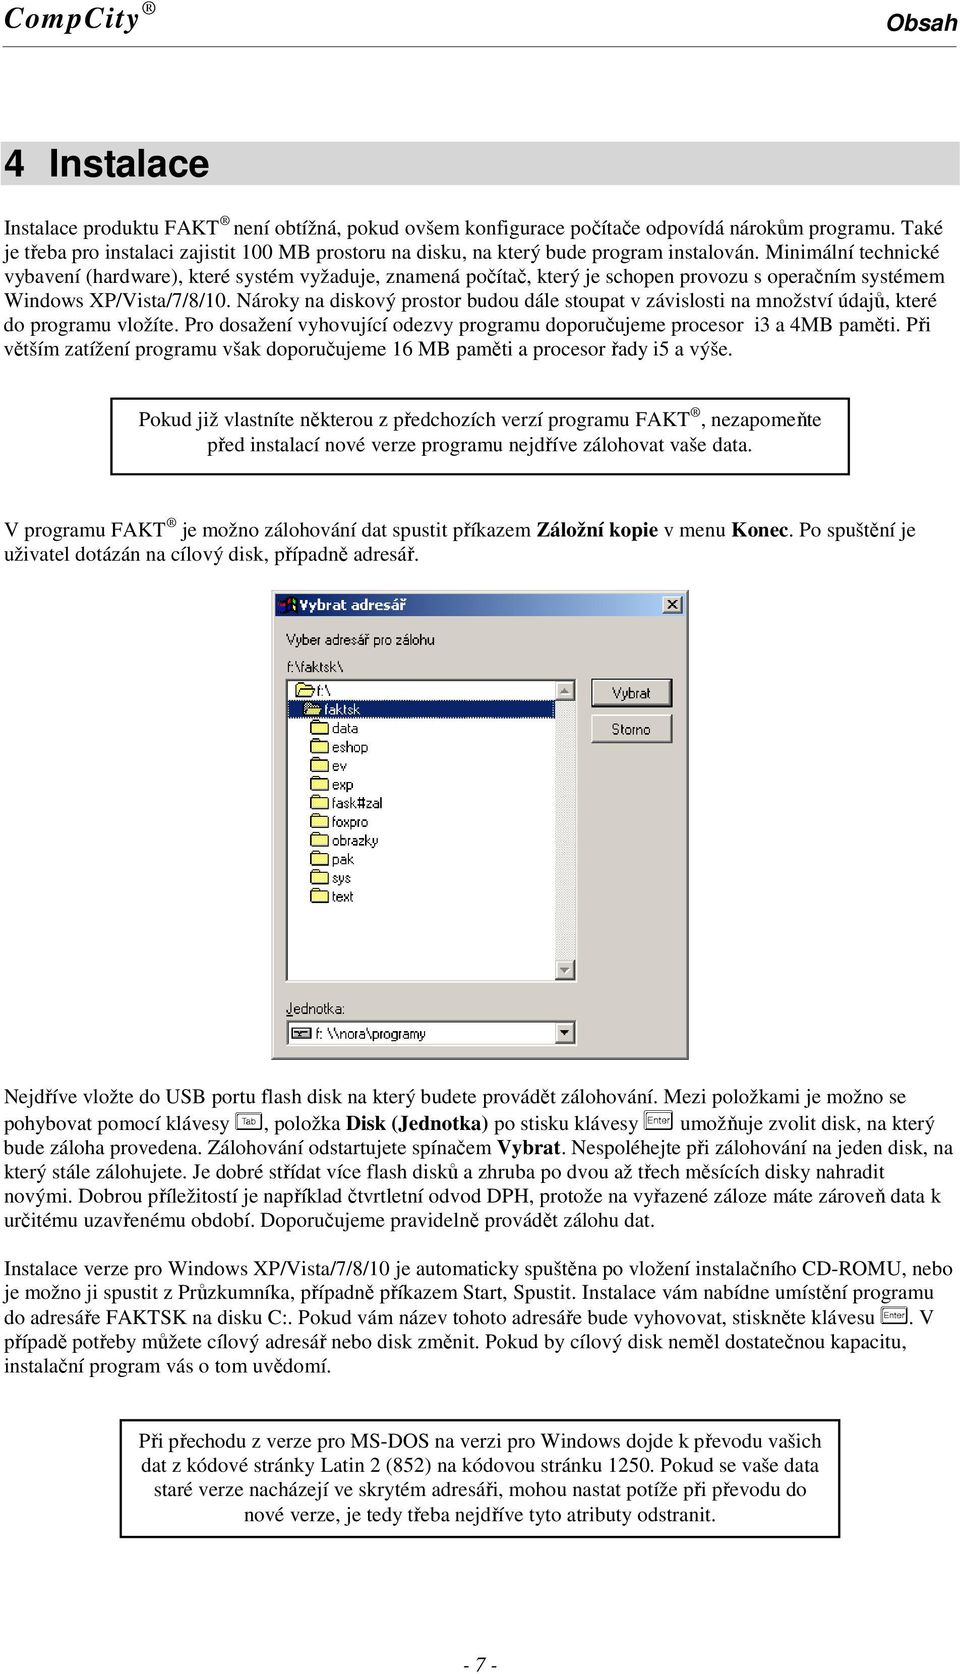 Minimální technické vybavení (hardware), které systém vyžaduje, znamená počítač, který je schopen provozu s operačním systémem Windows XP/Vista/7/8/10.